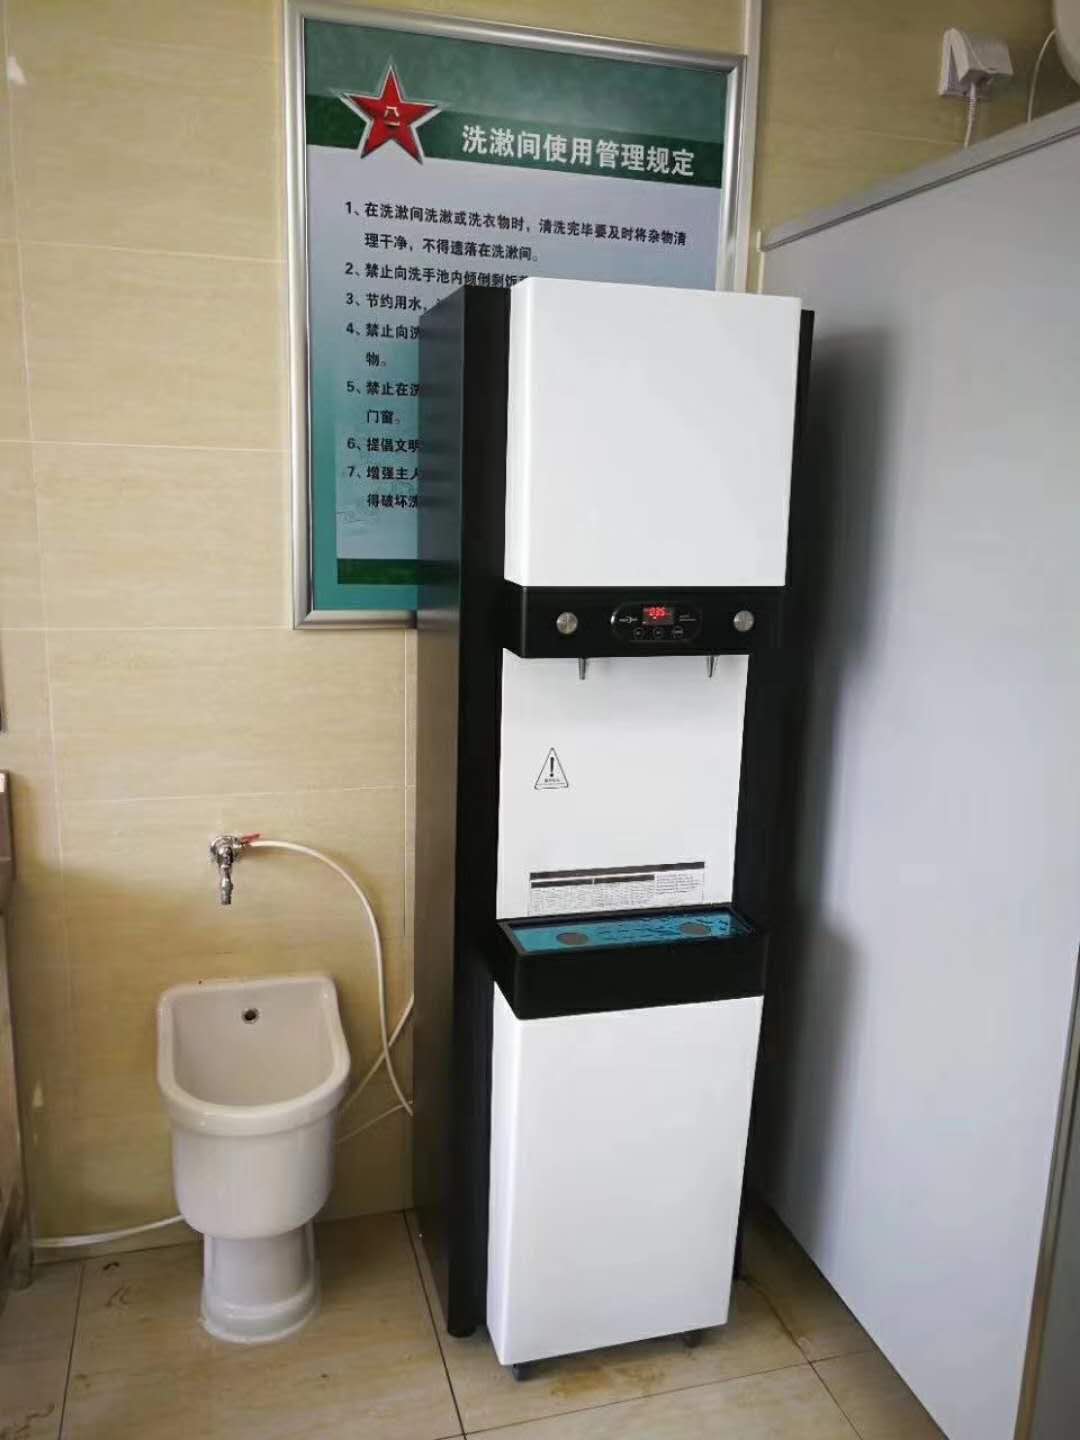 饮水机|开水器|郑州直饮水机|铭泽商净